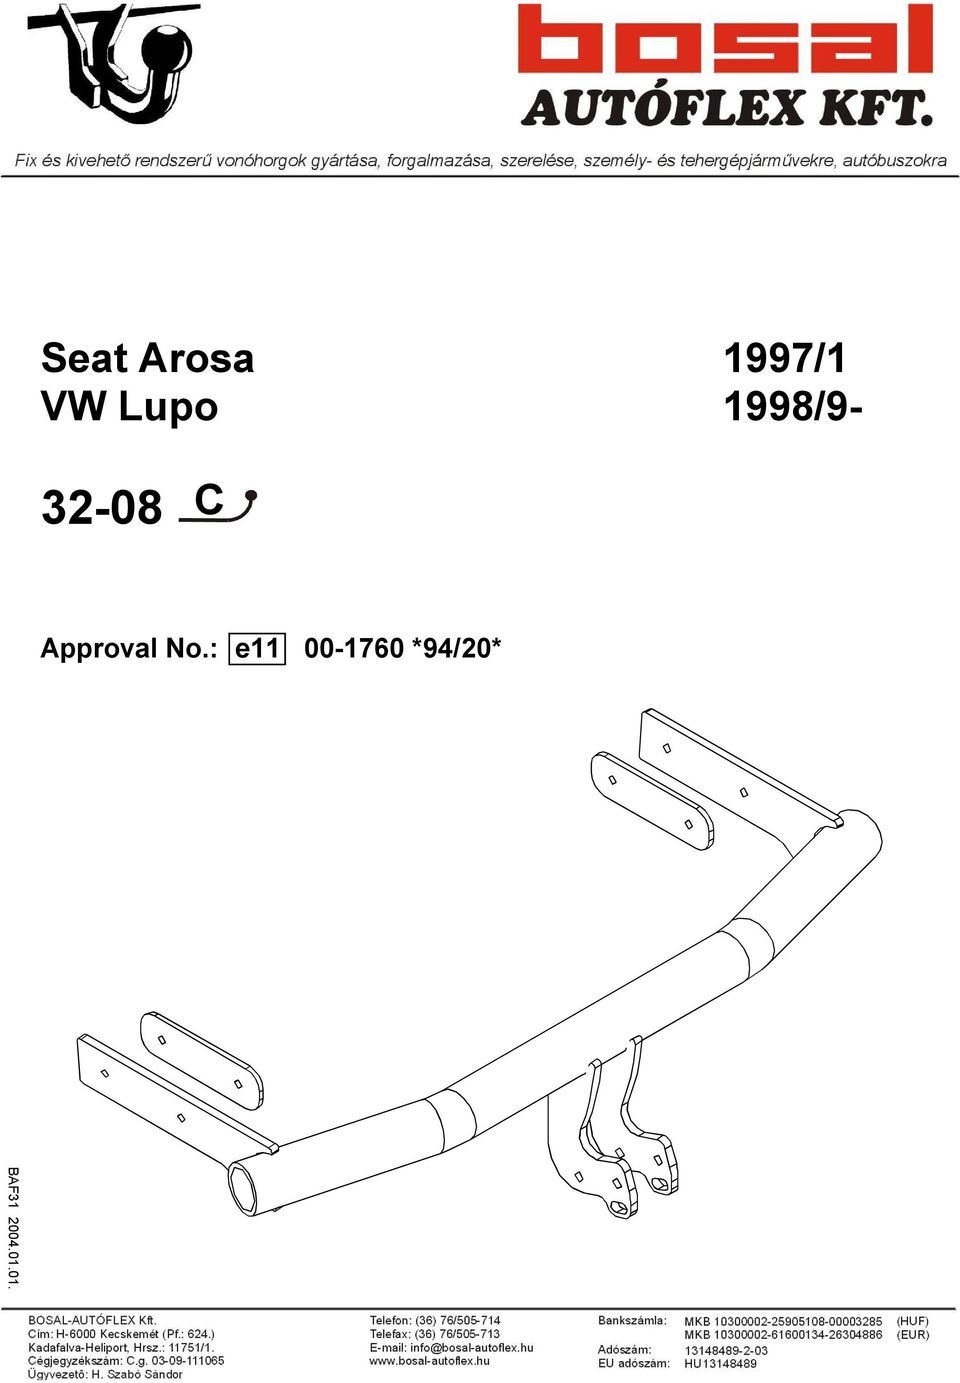 Seat Arosa 1997/1 VW Lupo 1998/ C. Approval No.: e *94/20* - PDF Free  Download